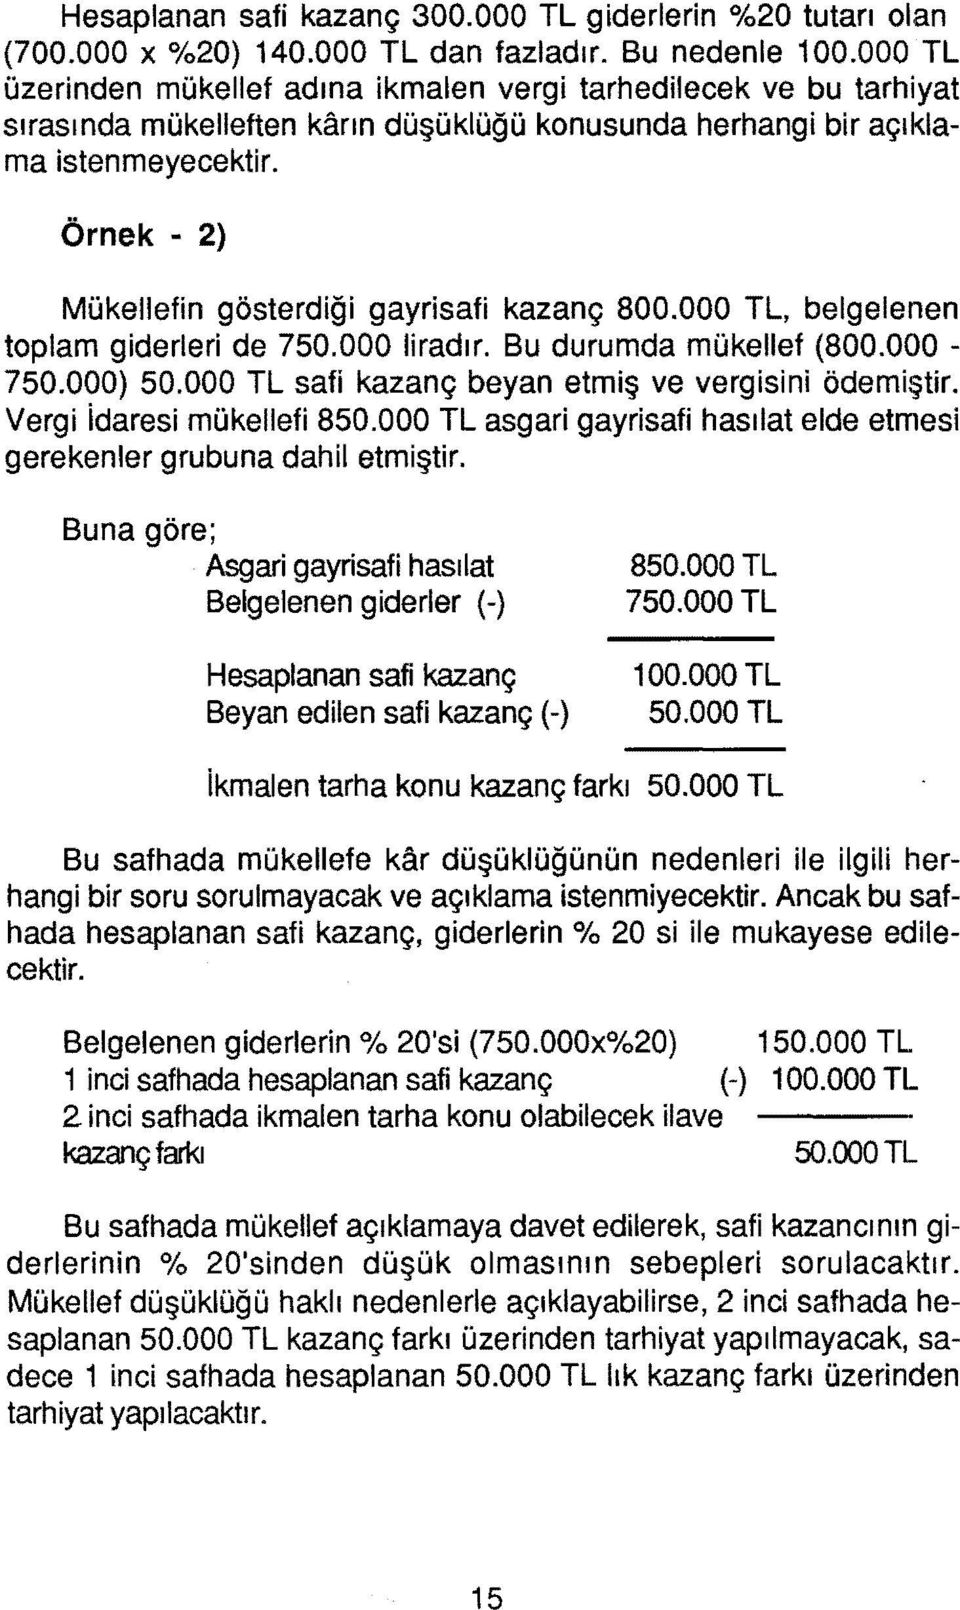 Örnek - 2) Mükellefin gösterdiği gayrisafi kazanç 800.000 TL, belgelenen toplam giderleri de 750.000 liradır. Bu durumda mükellef (800.000-750.000) 50.